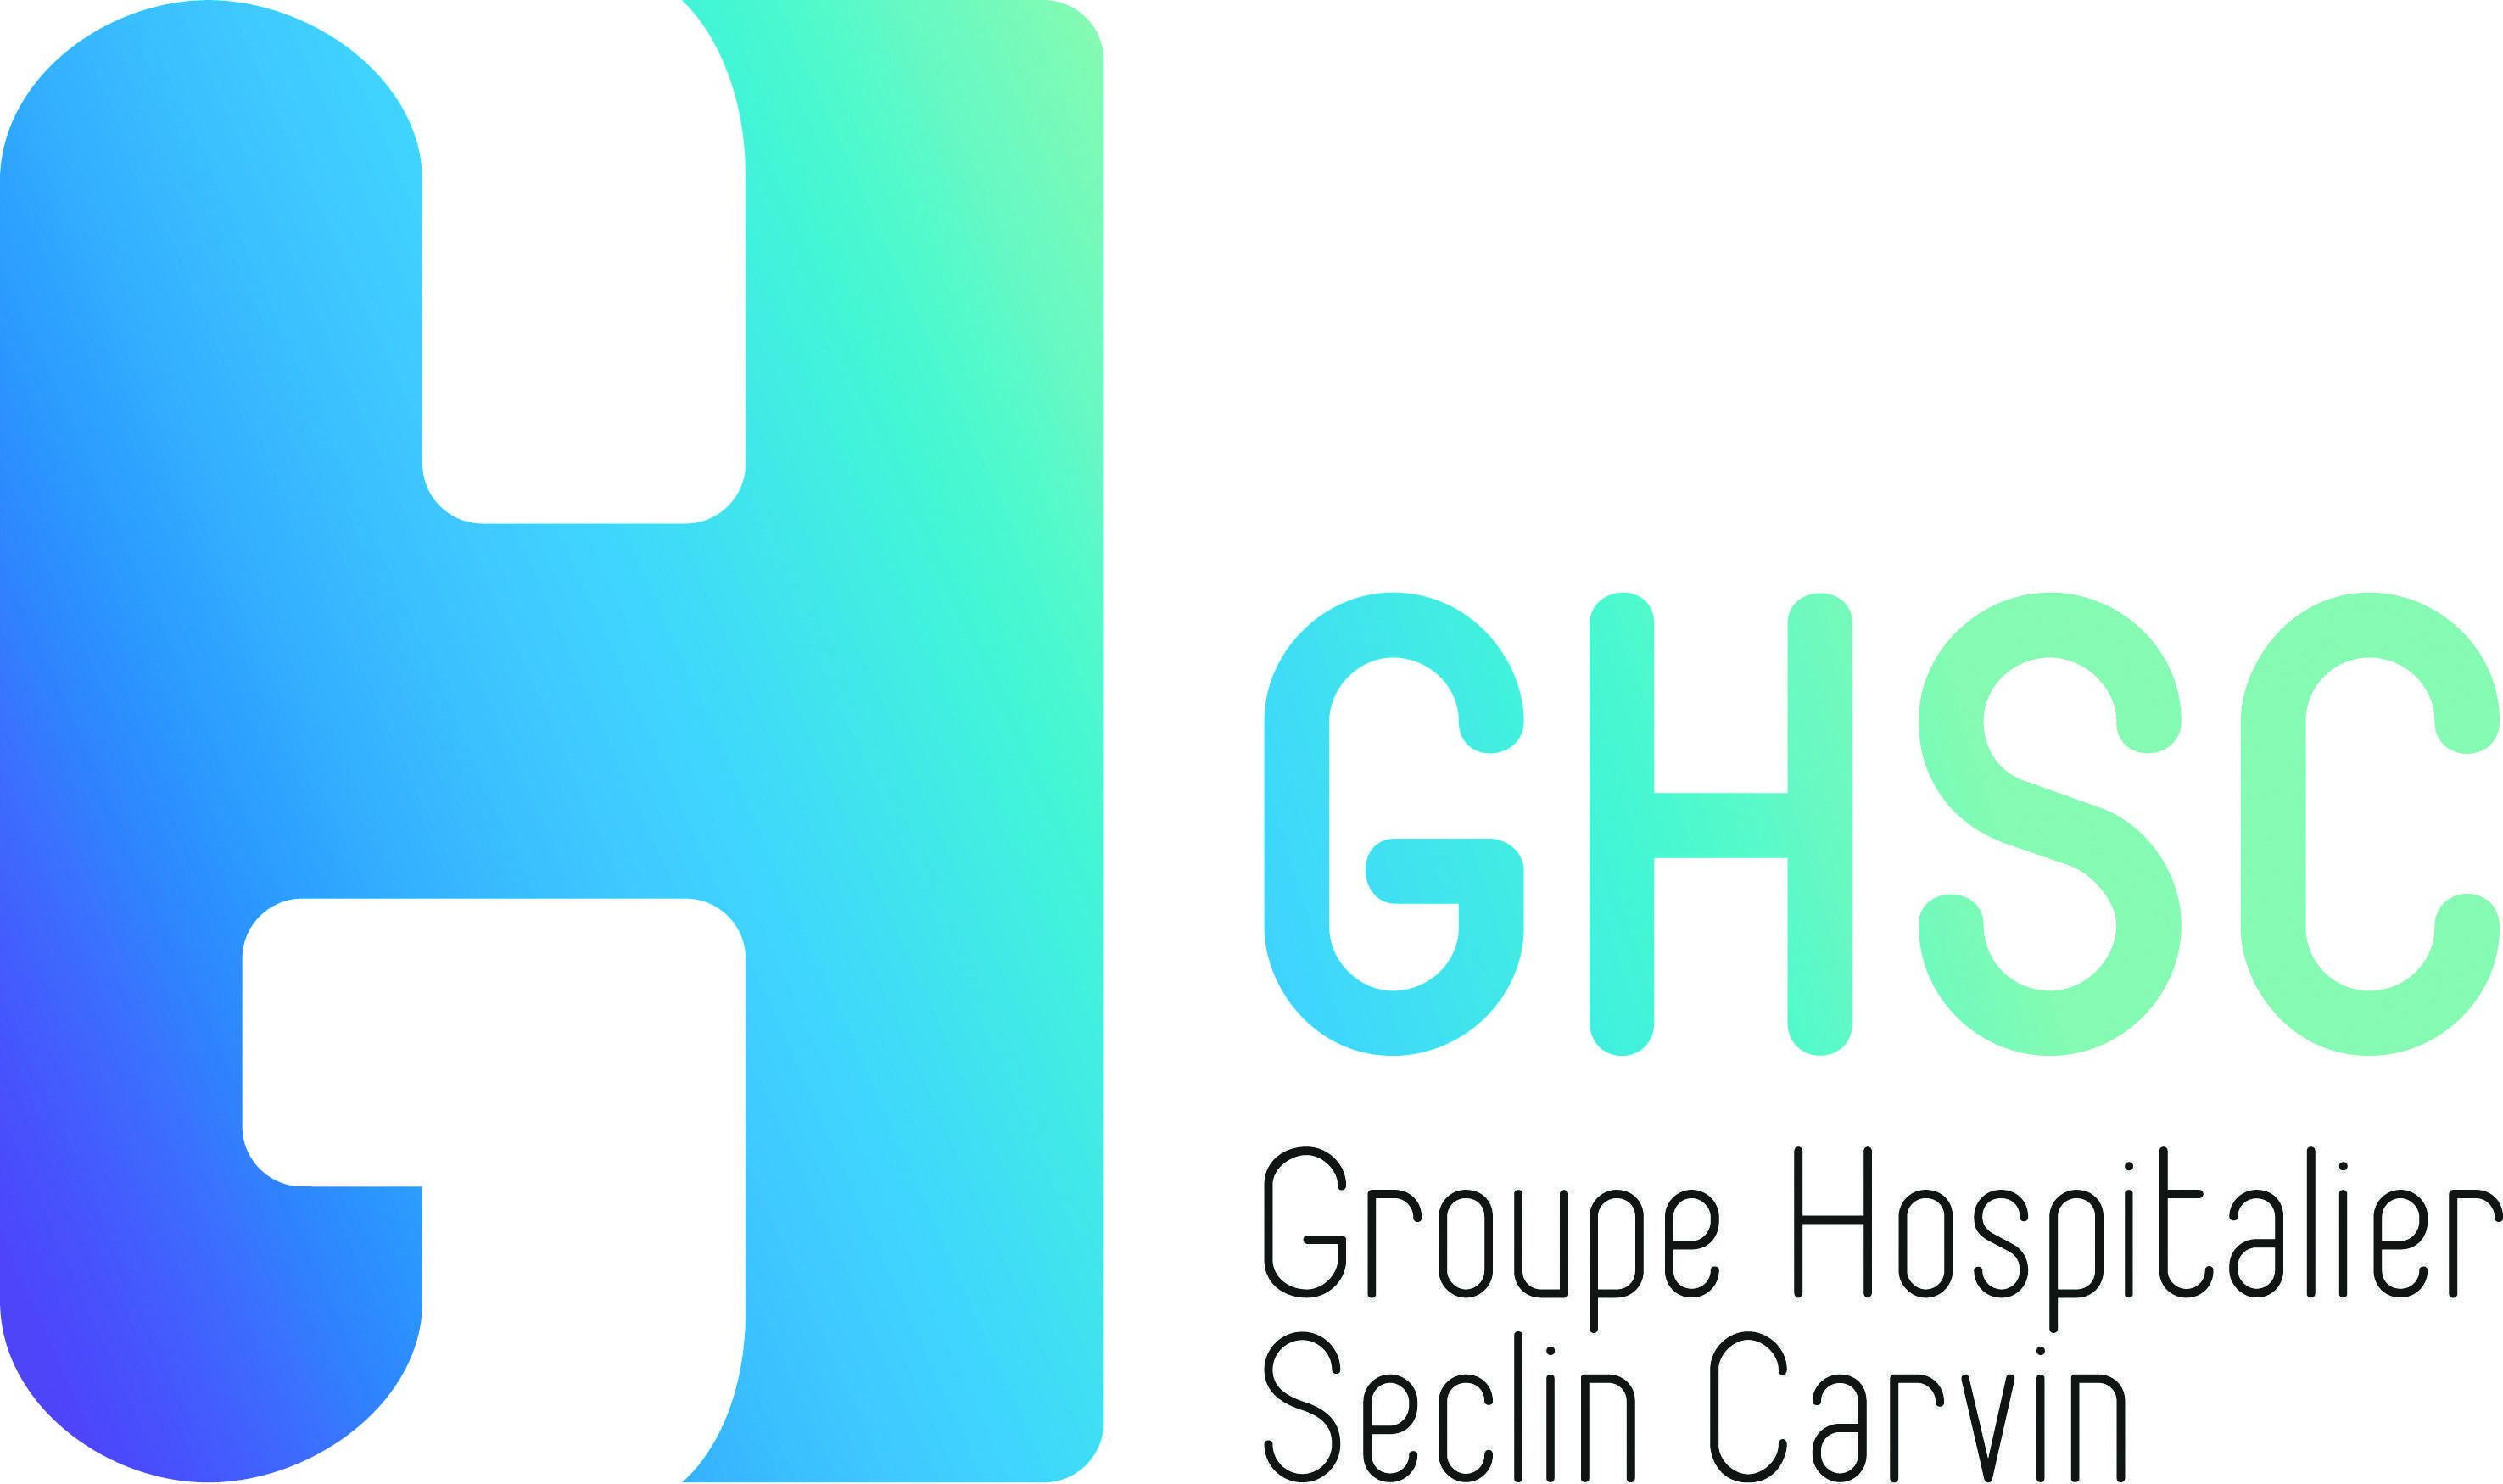 Groupe Hospitalier SECLIN CARVIN  (Seclin)